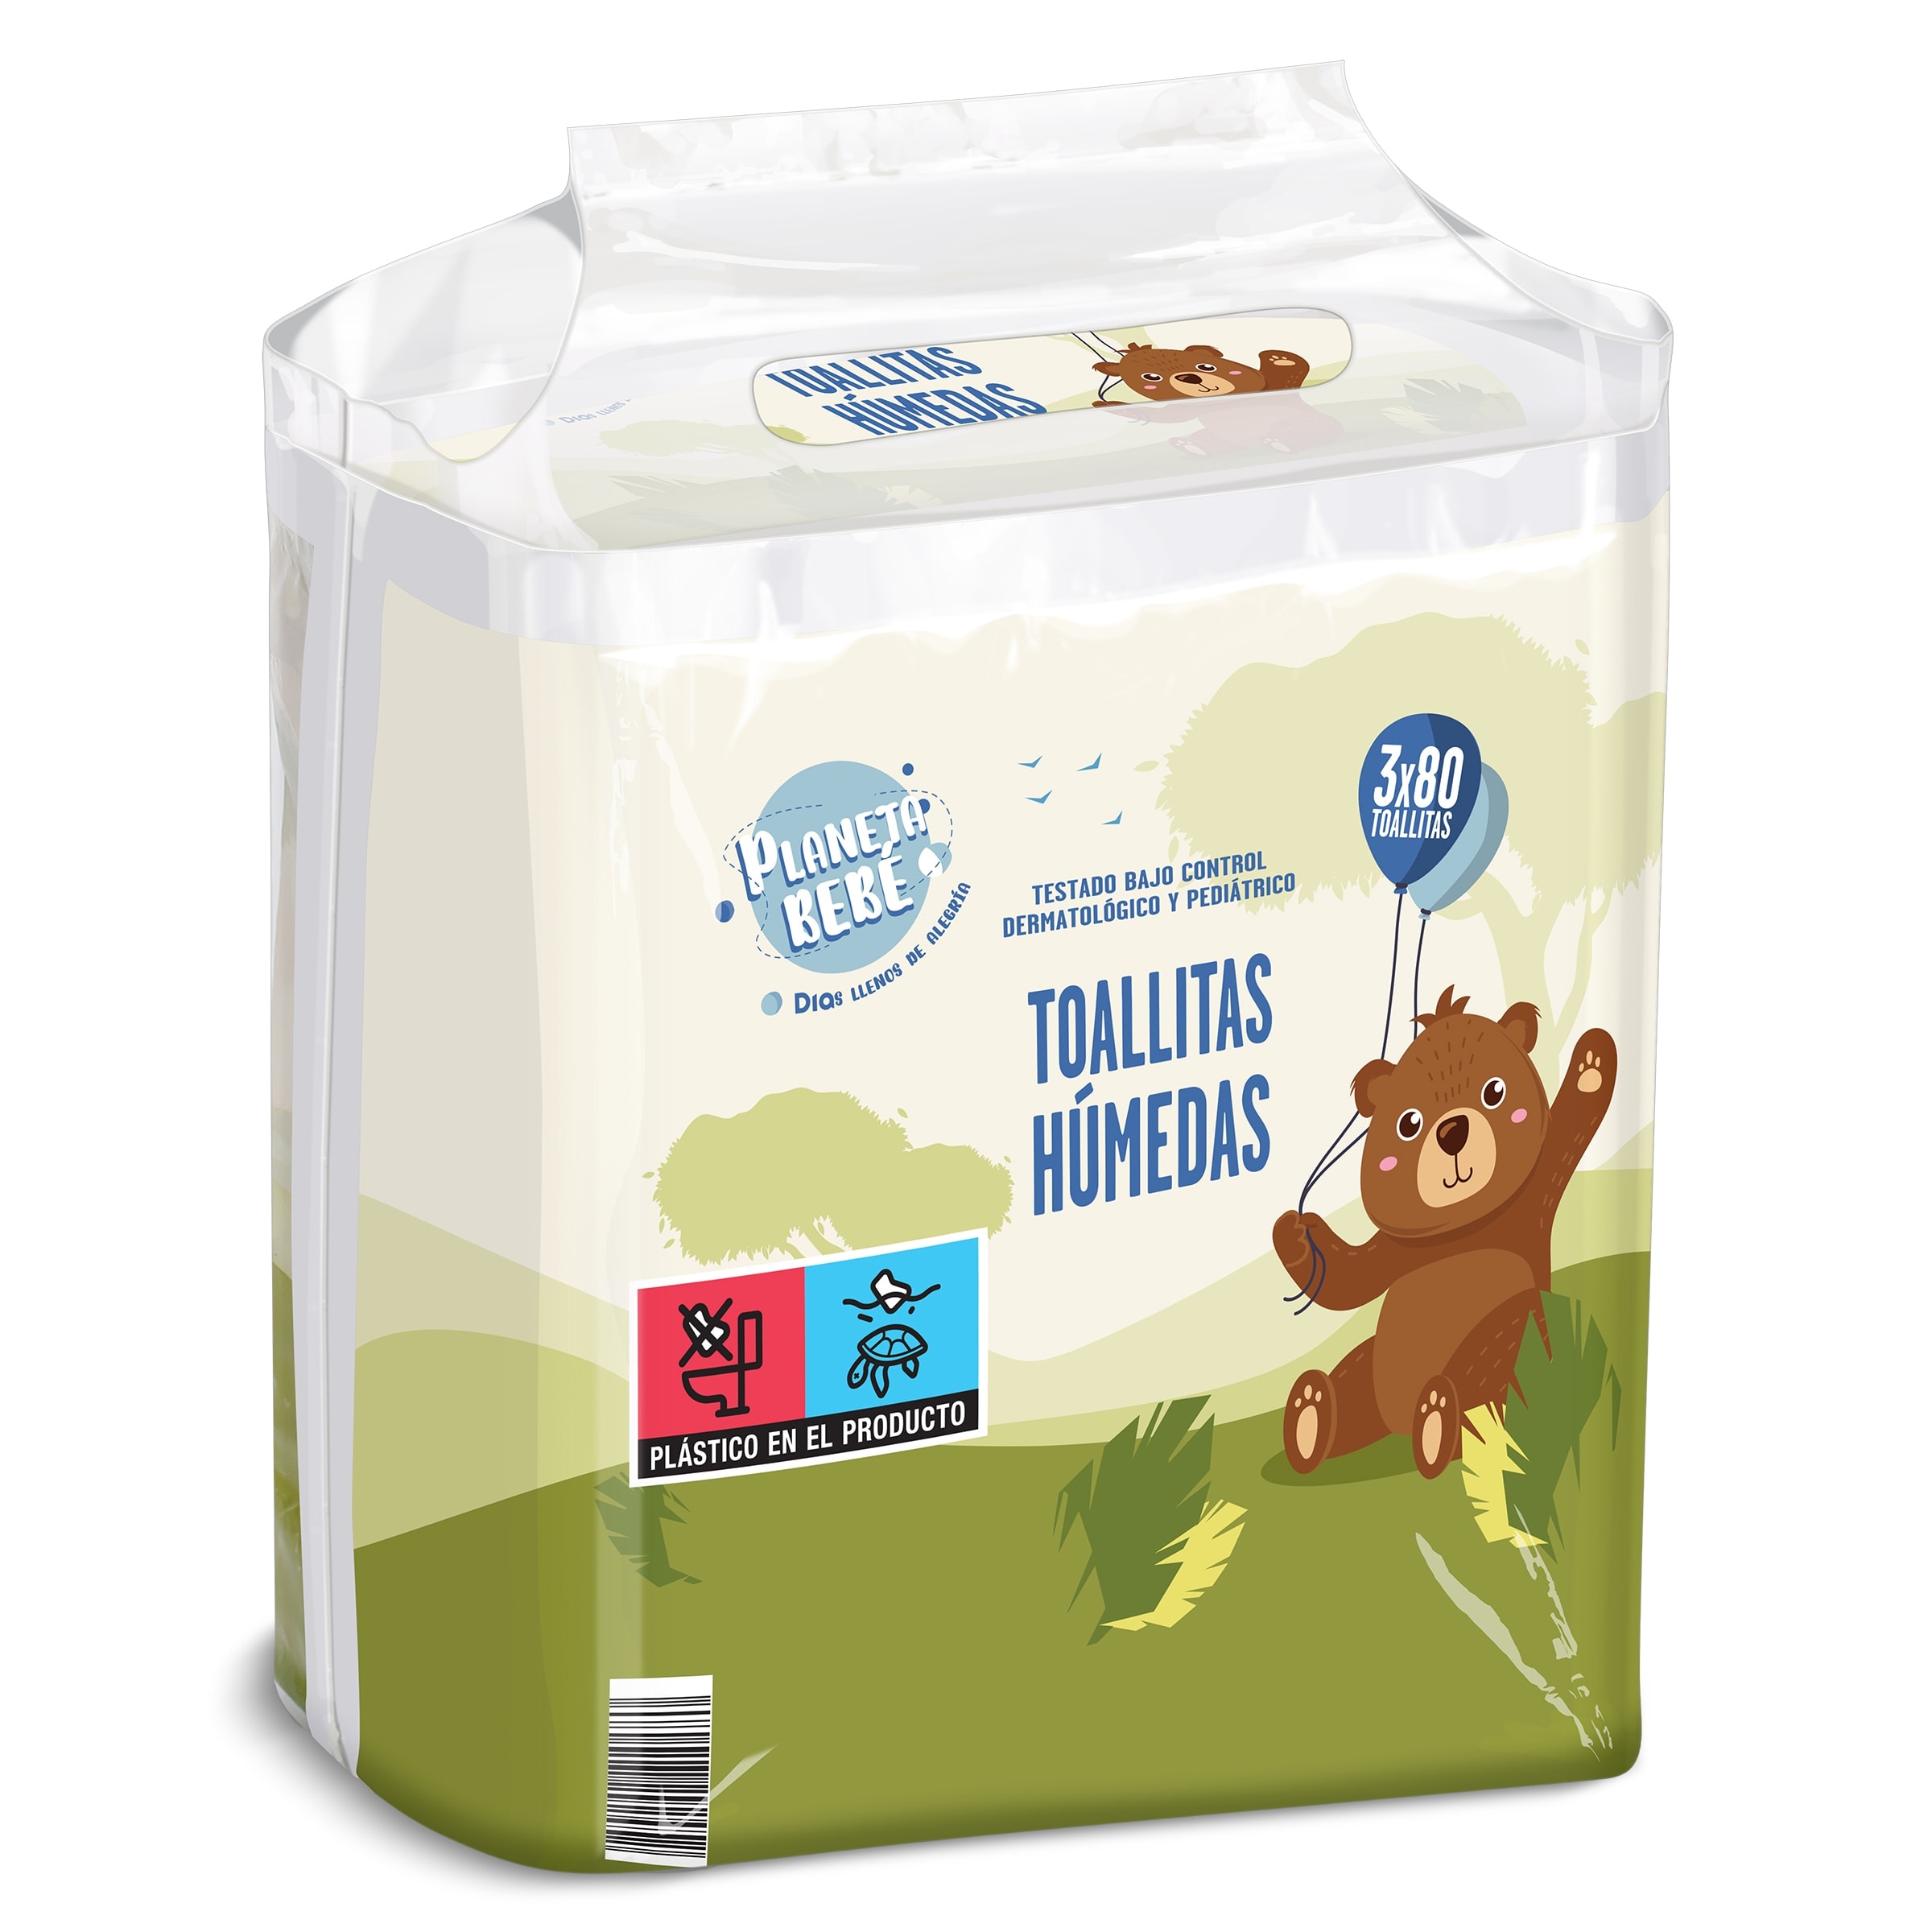 Toallitas para bebés aqua pure Dodot bolsa 3 x 48 g - Supermercados DIA